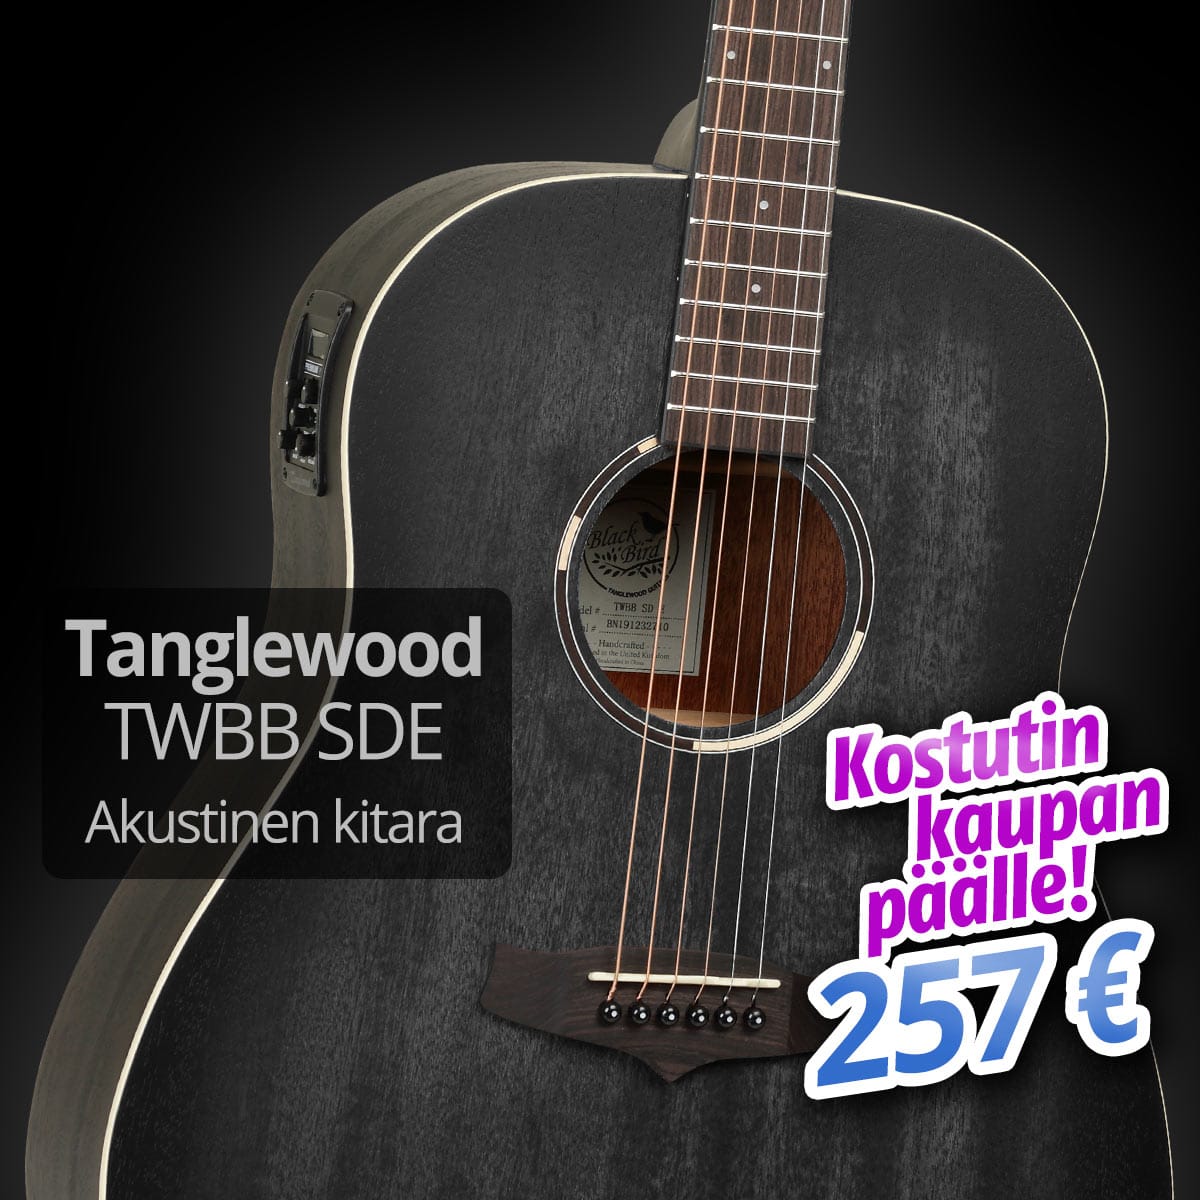 Tanglewood TWBB SDE akustinen kitara - 257 € - kostutin kaupan päälle!